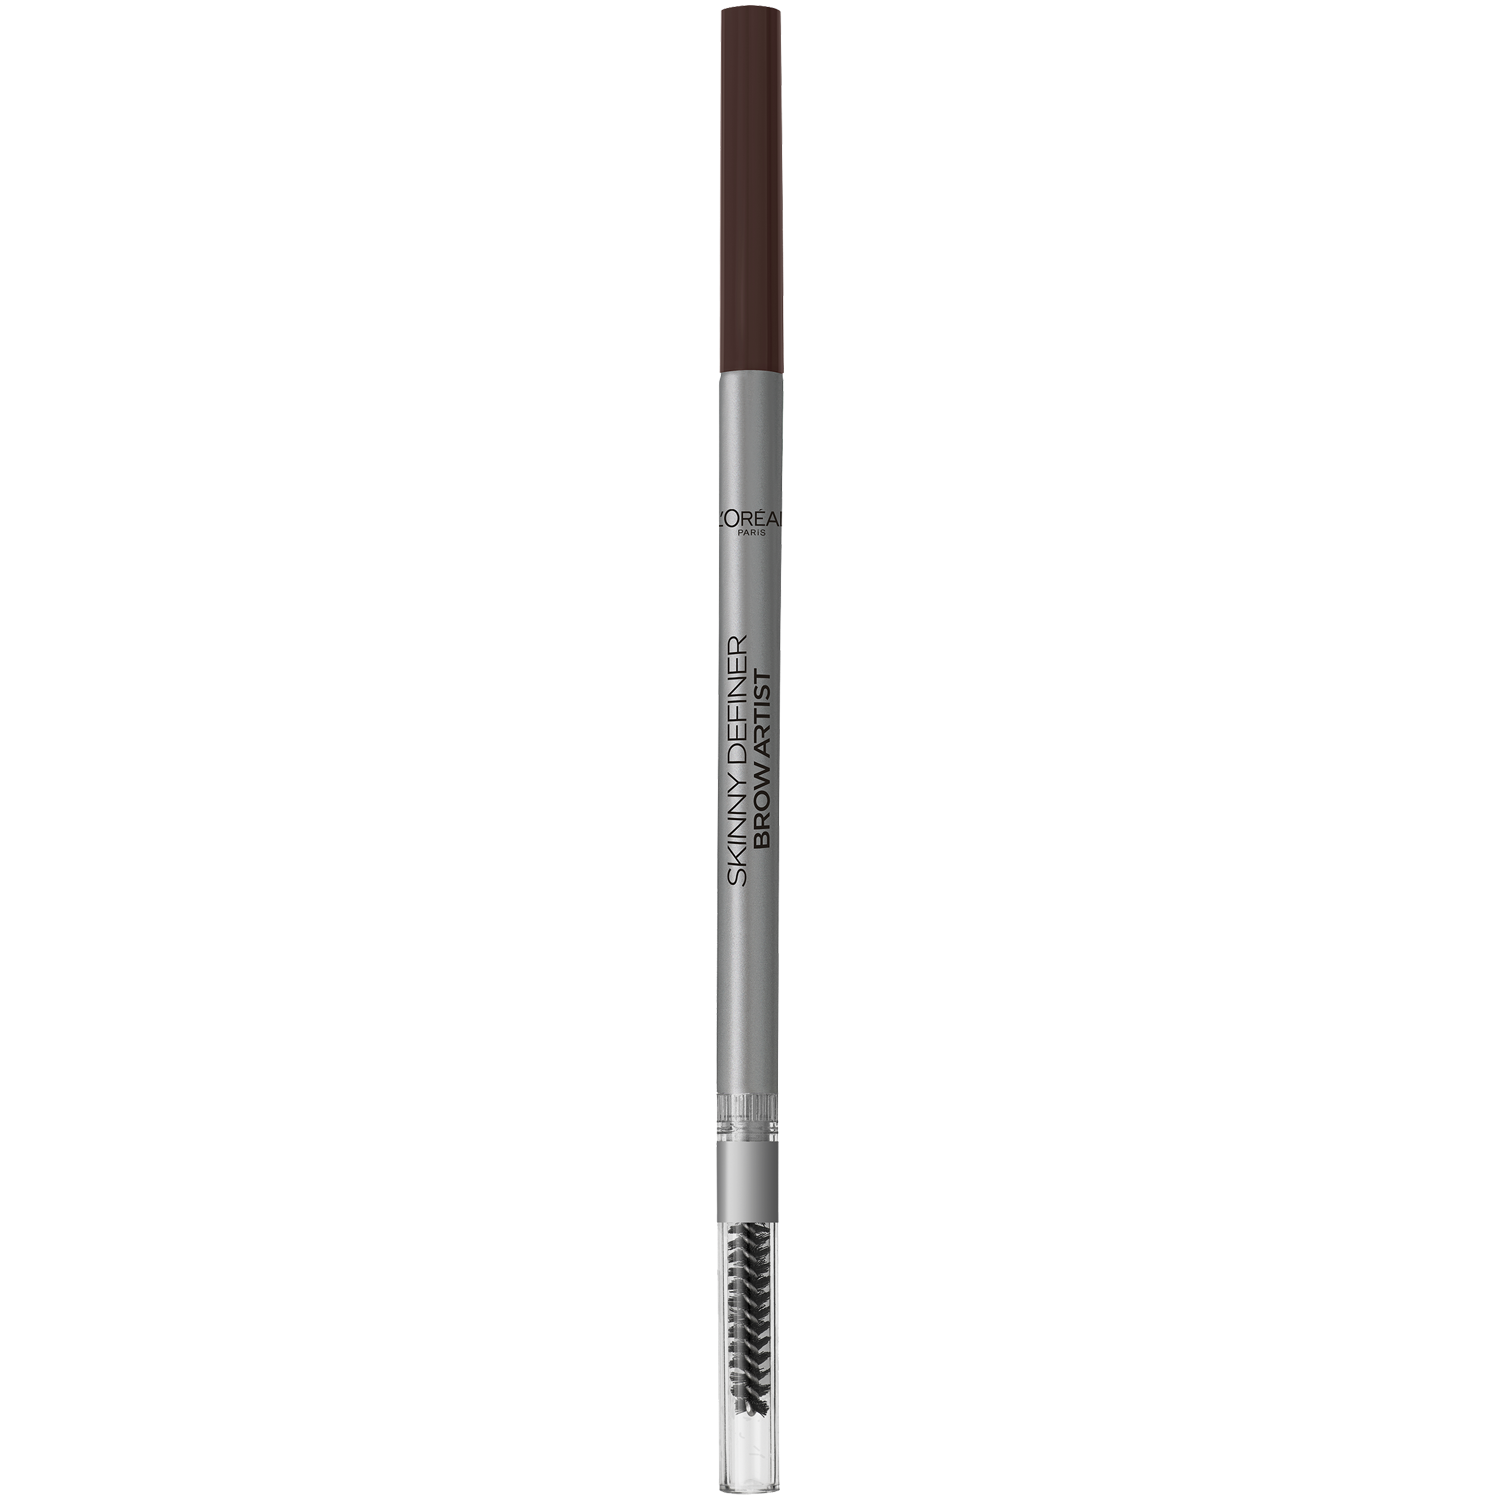 Карандаш для бровей 105 брюнетка L'Oréal Paris Brow Artist Xpert, 1,2 гр карандаш для бровей brow artist xpert l oreal paris 102 холодный блонд